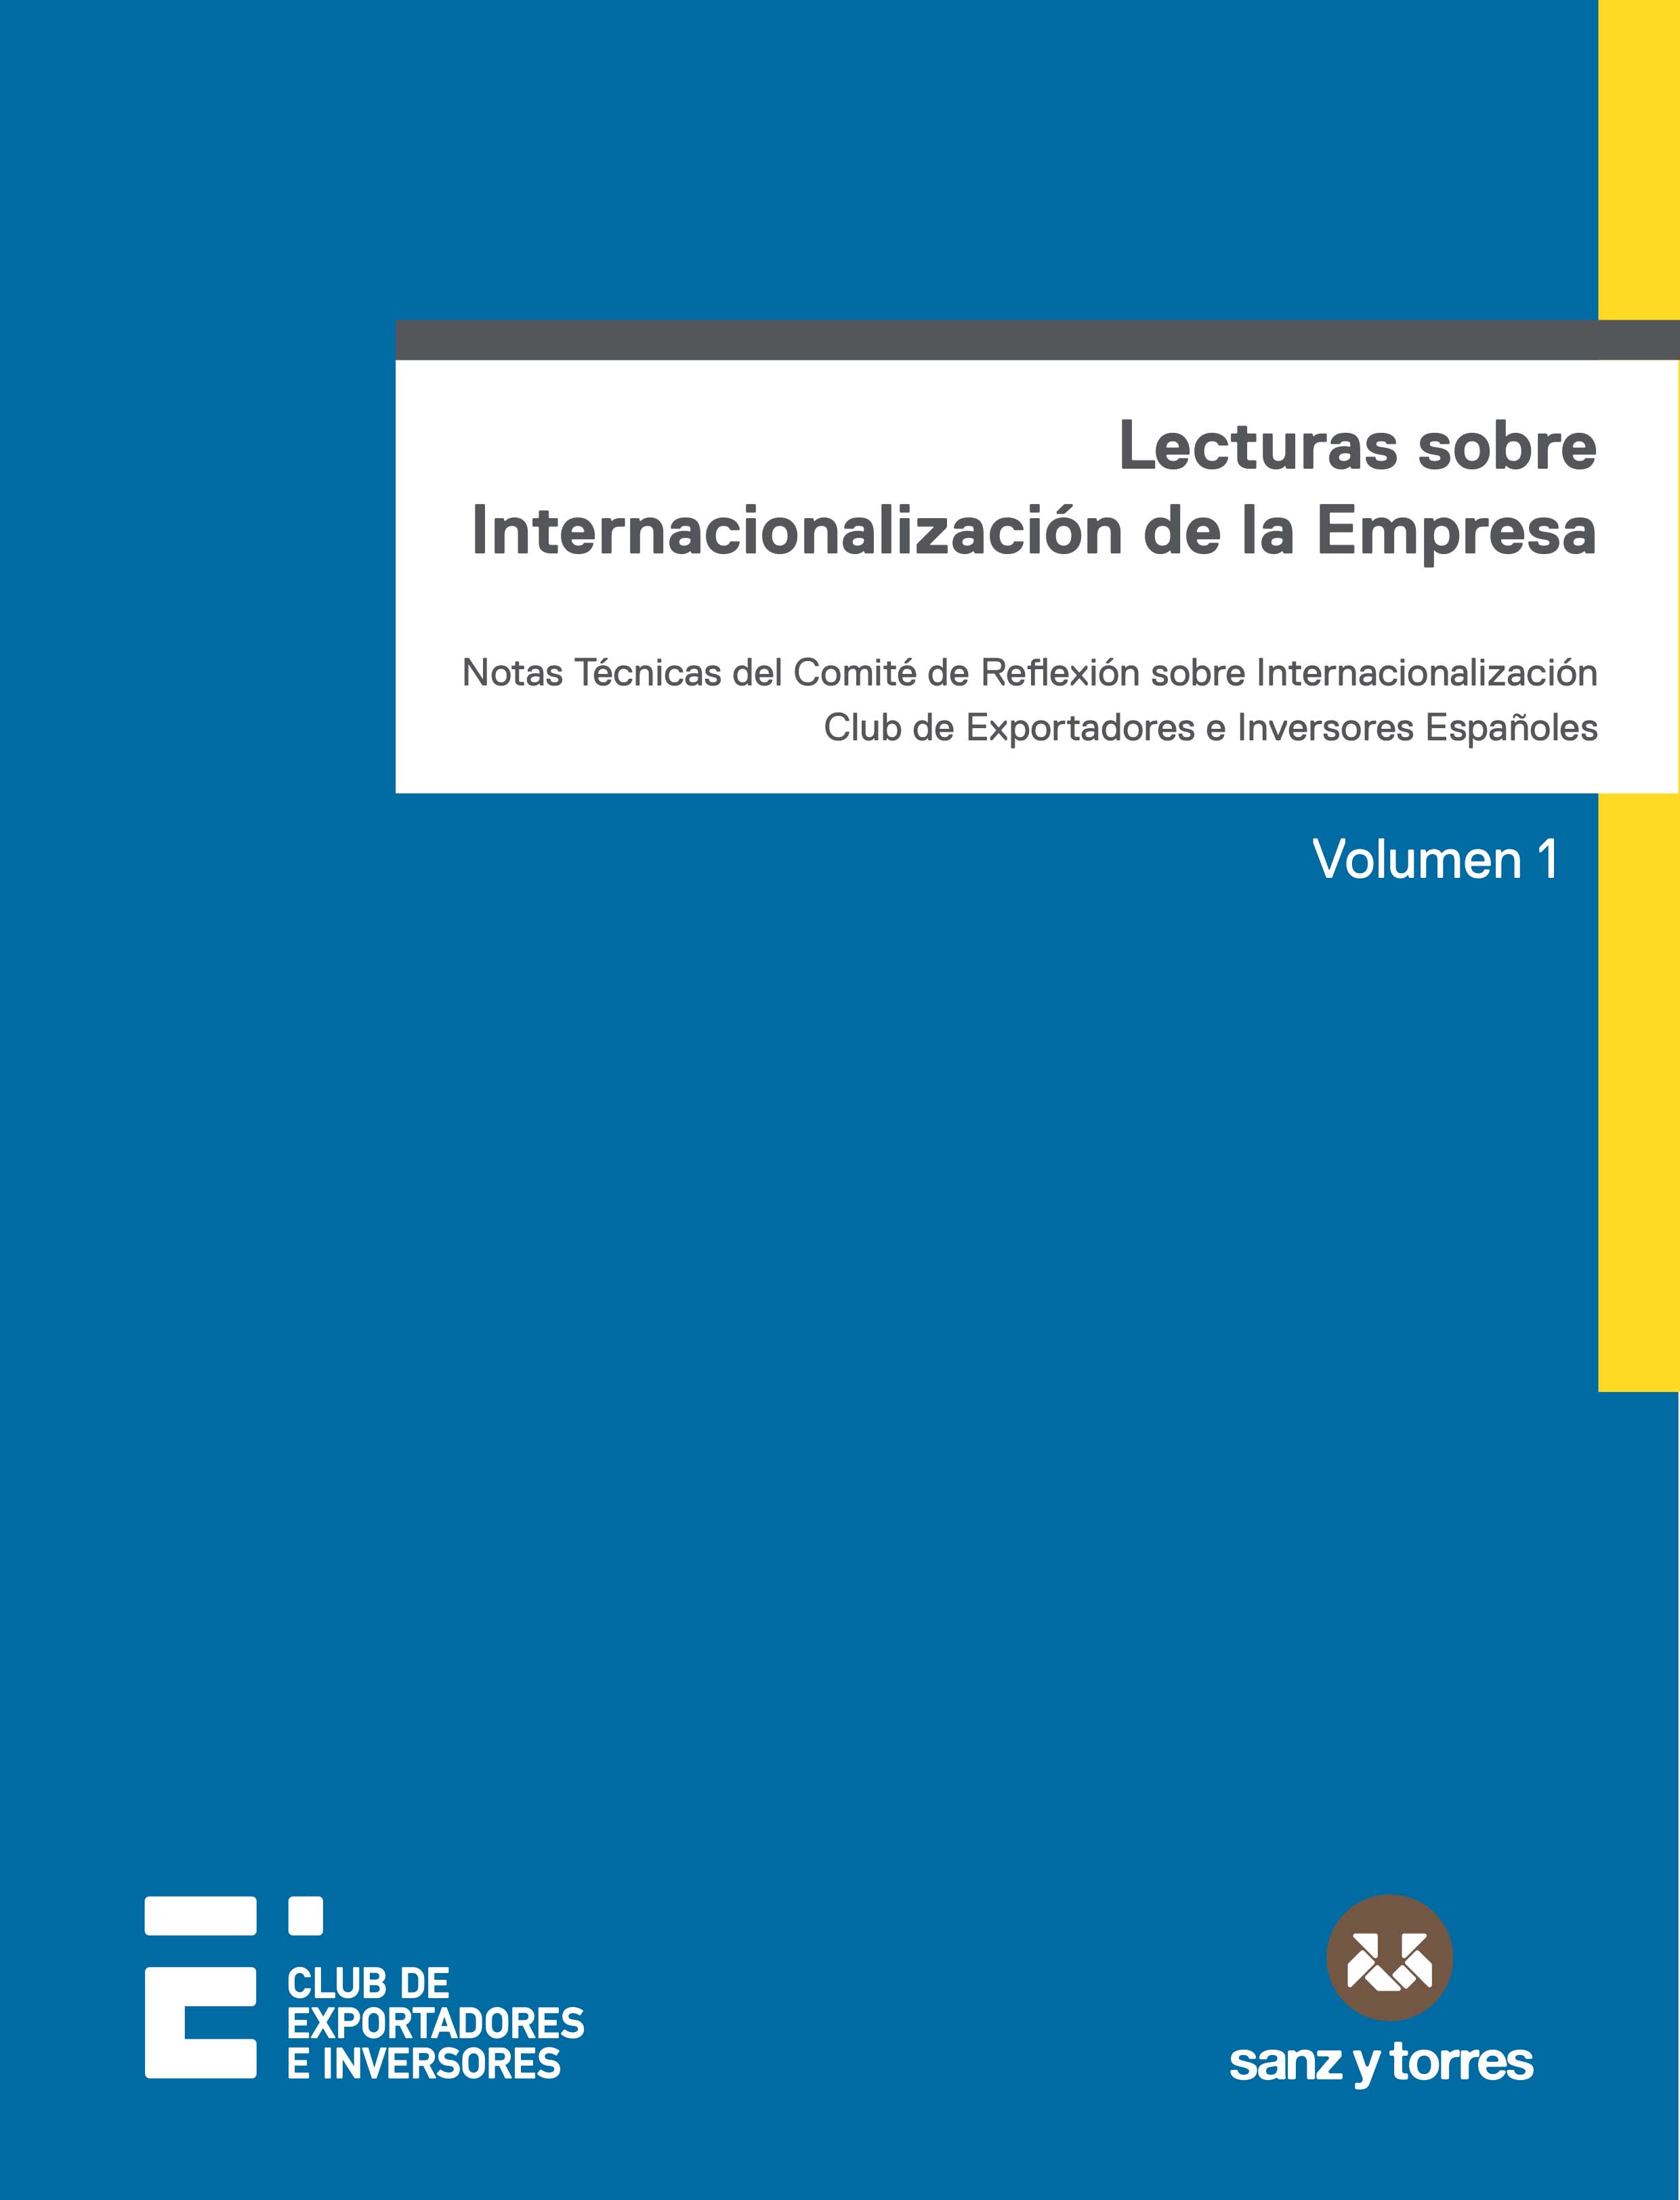 Lecturas sobre internacionalización de la empresa
Notas técnicas del comité de reflexión sobre internacionalización Club de Exportadores e Inversores Españoles